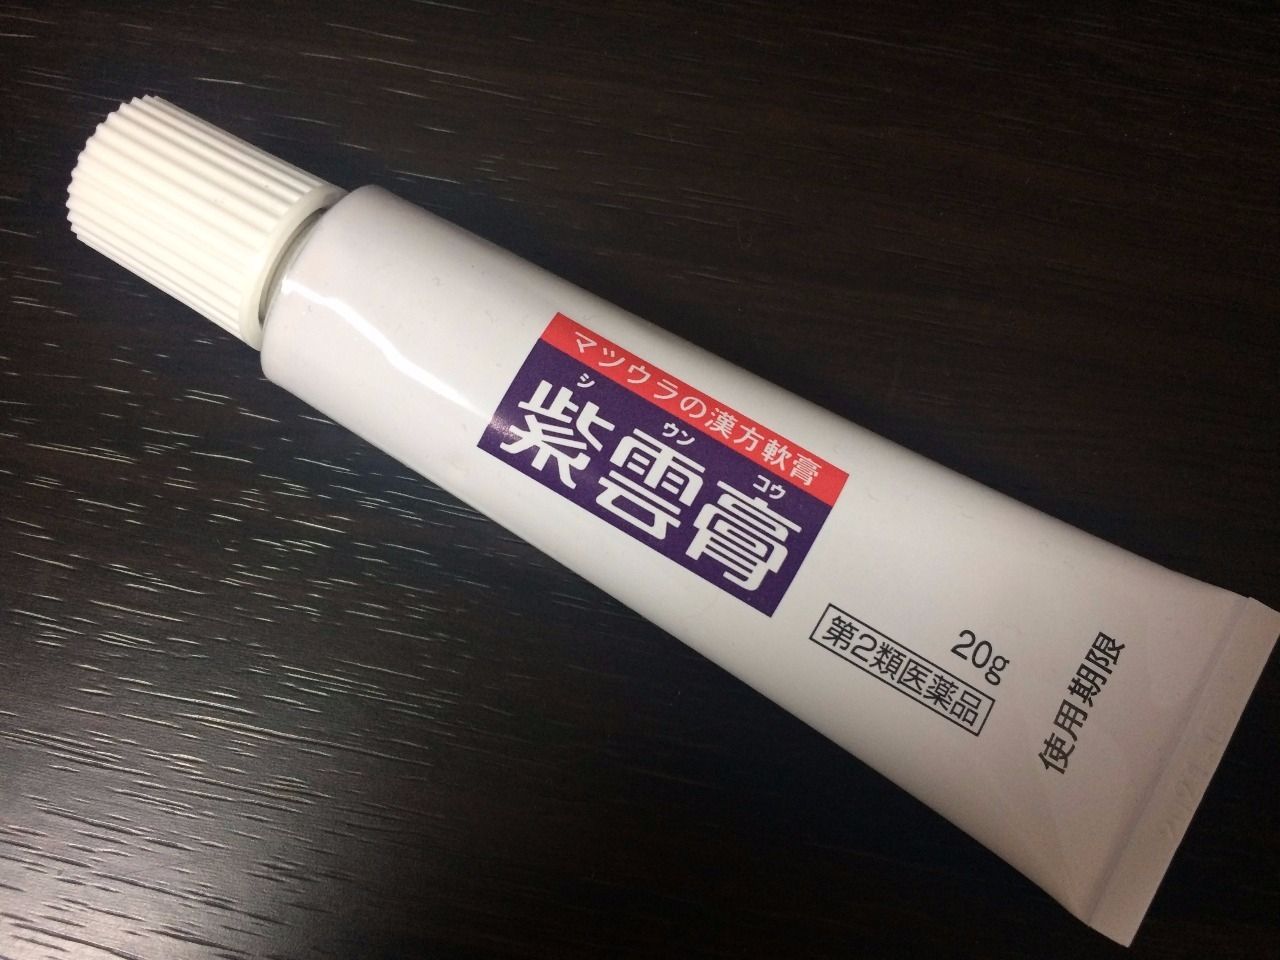  松浦漢方株式会社のマツウラの漢方軟膏『紫雲膏』